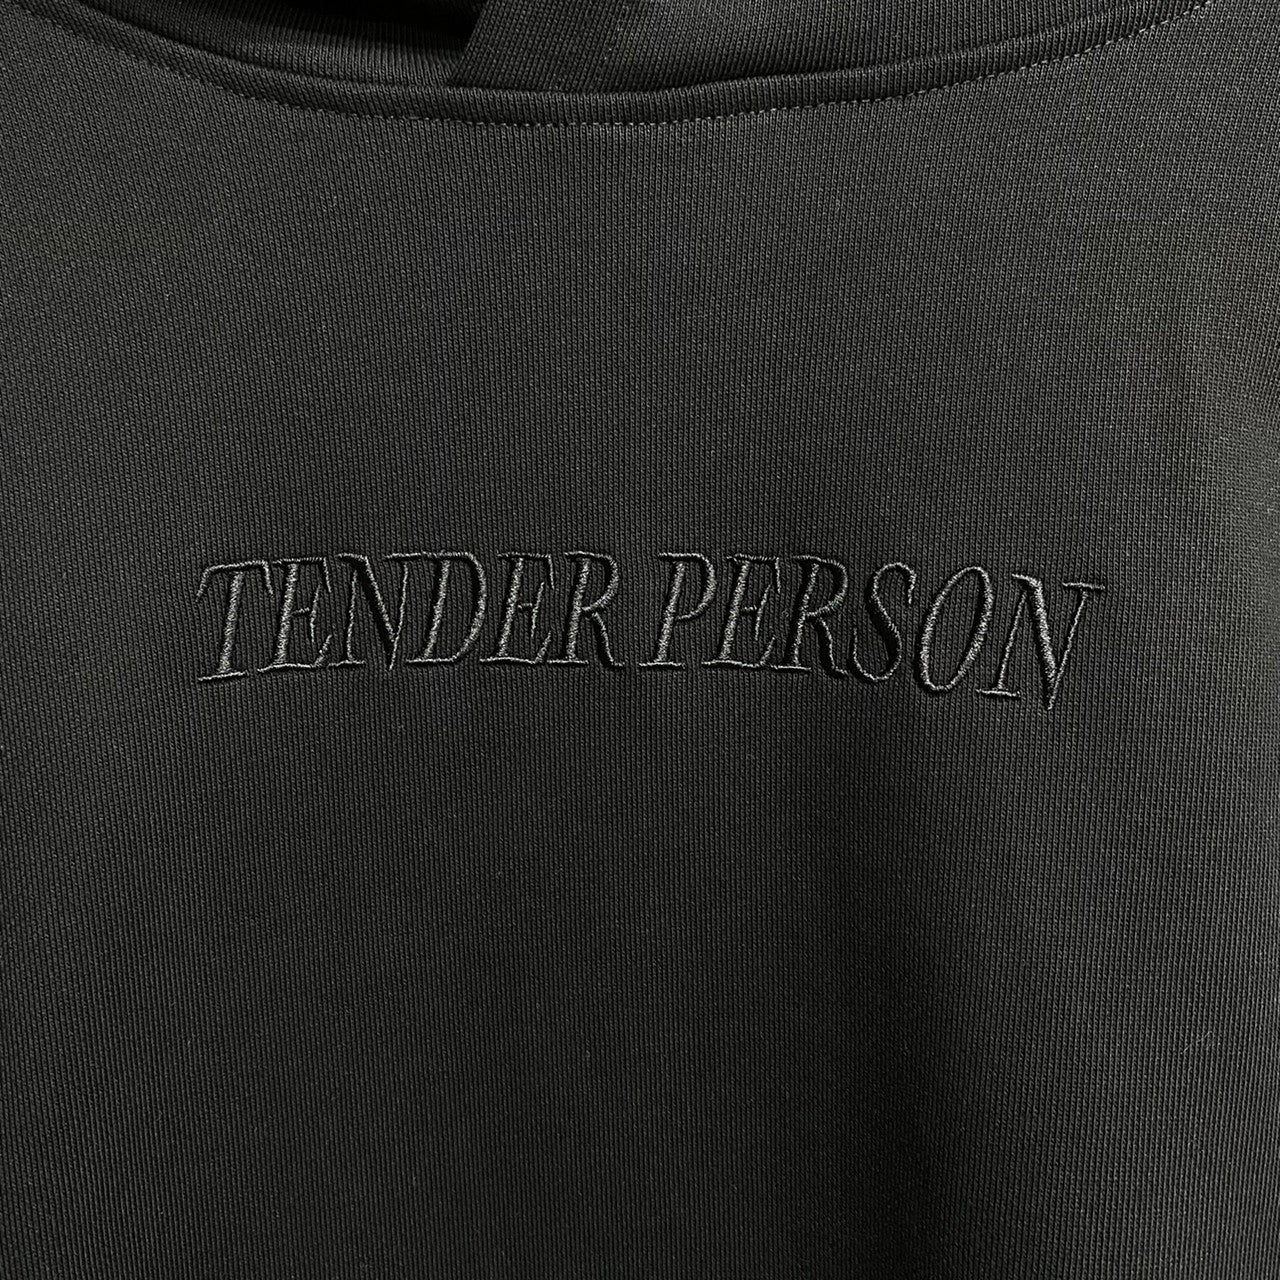 TENDER PERSON STANDERD HOODIE / TENDER PERSON